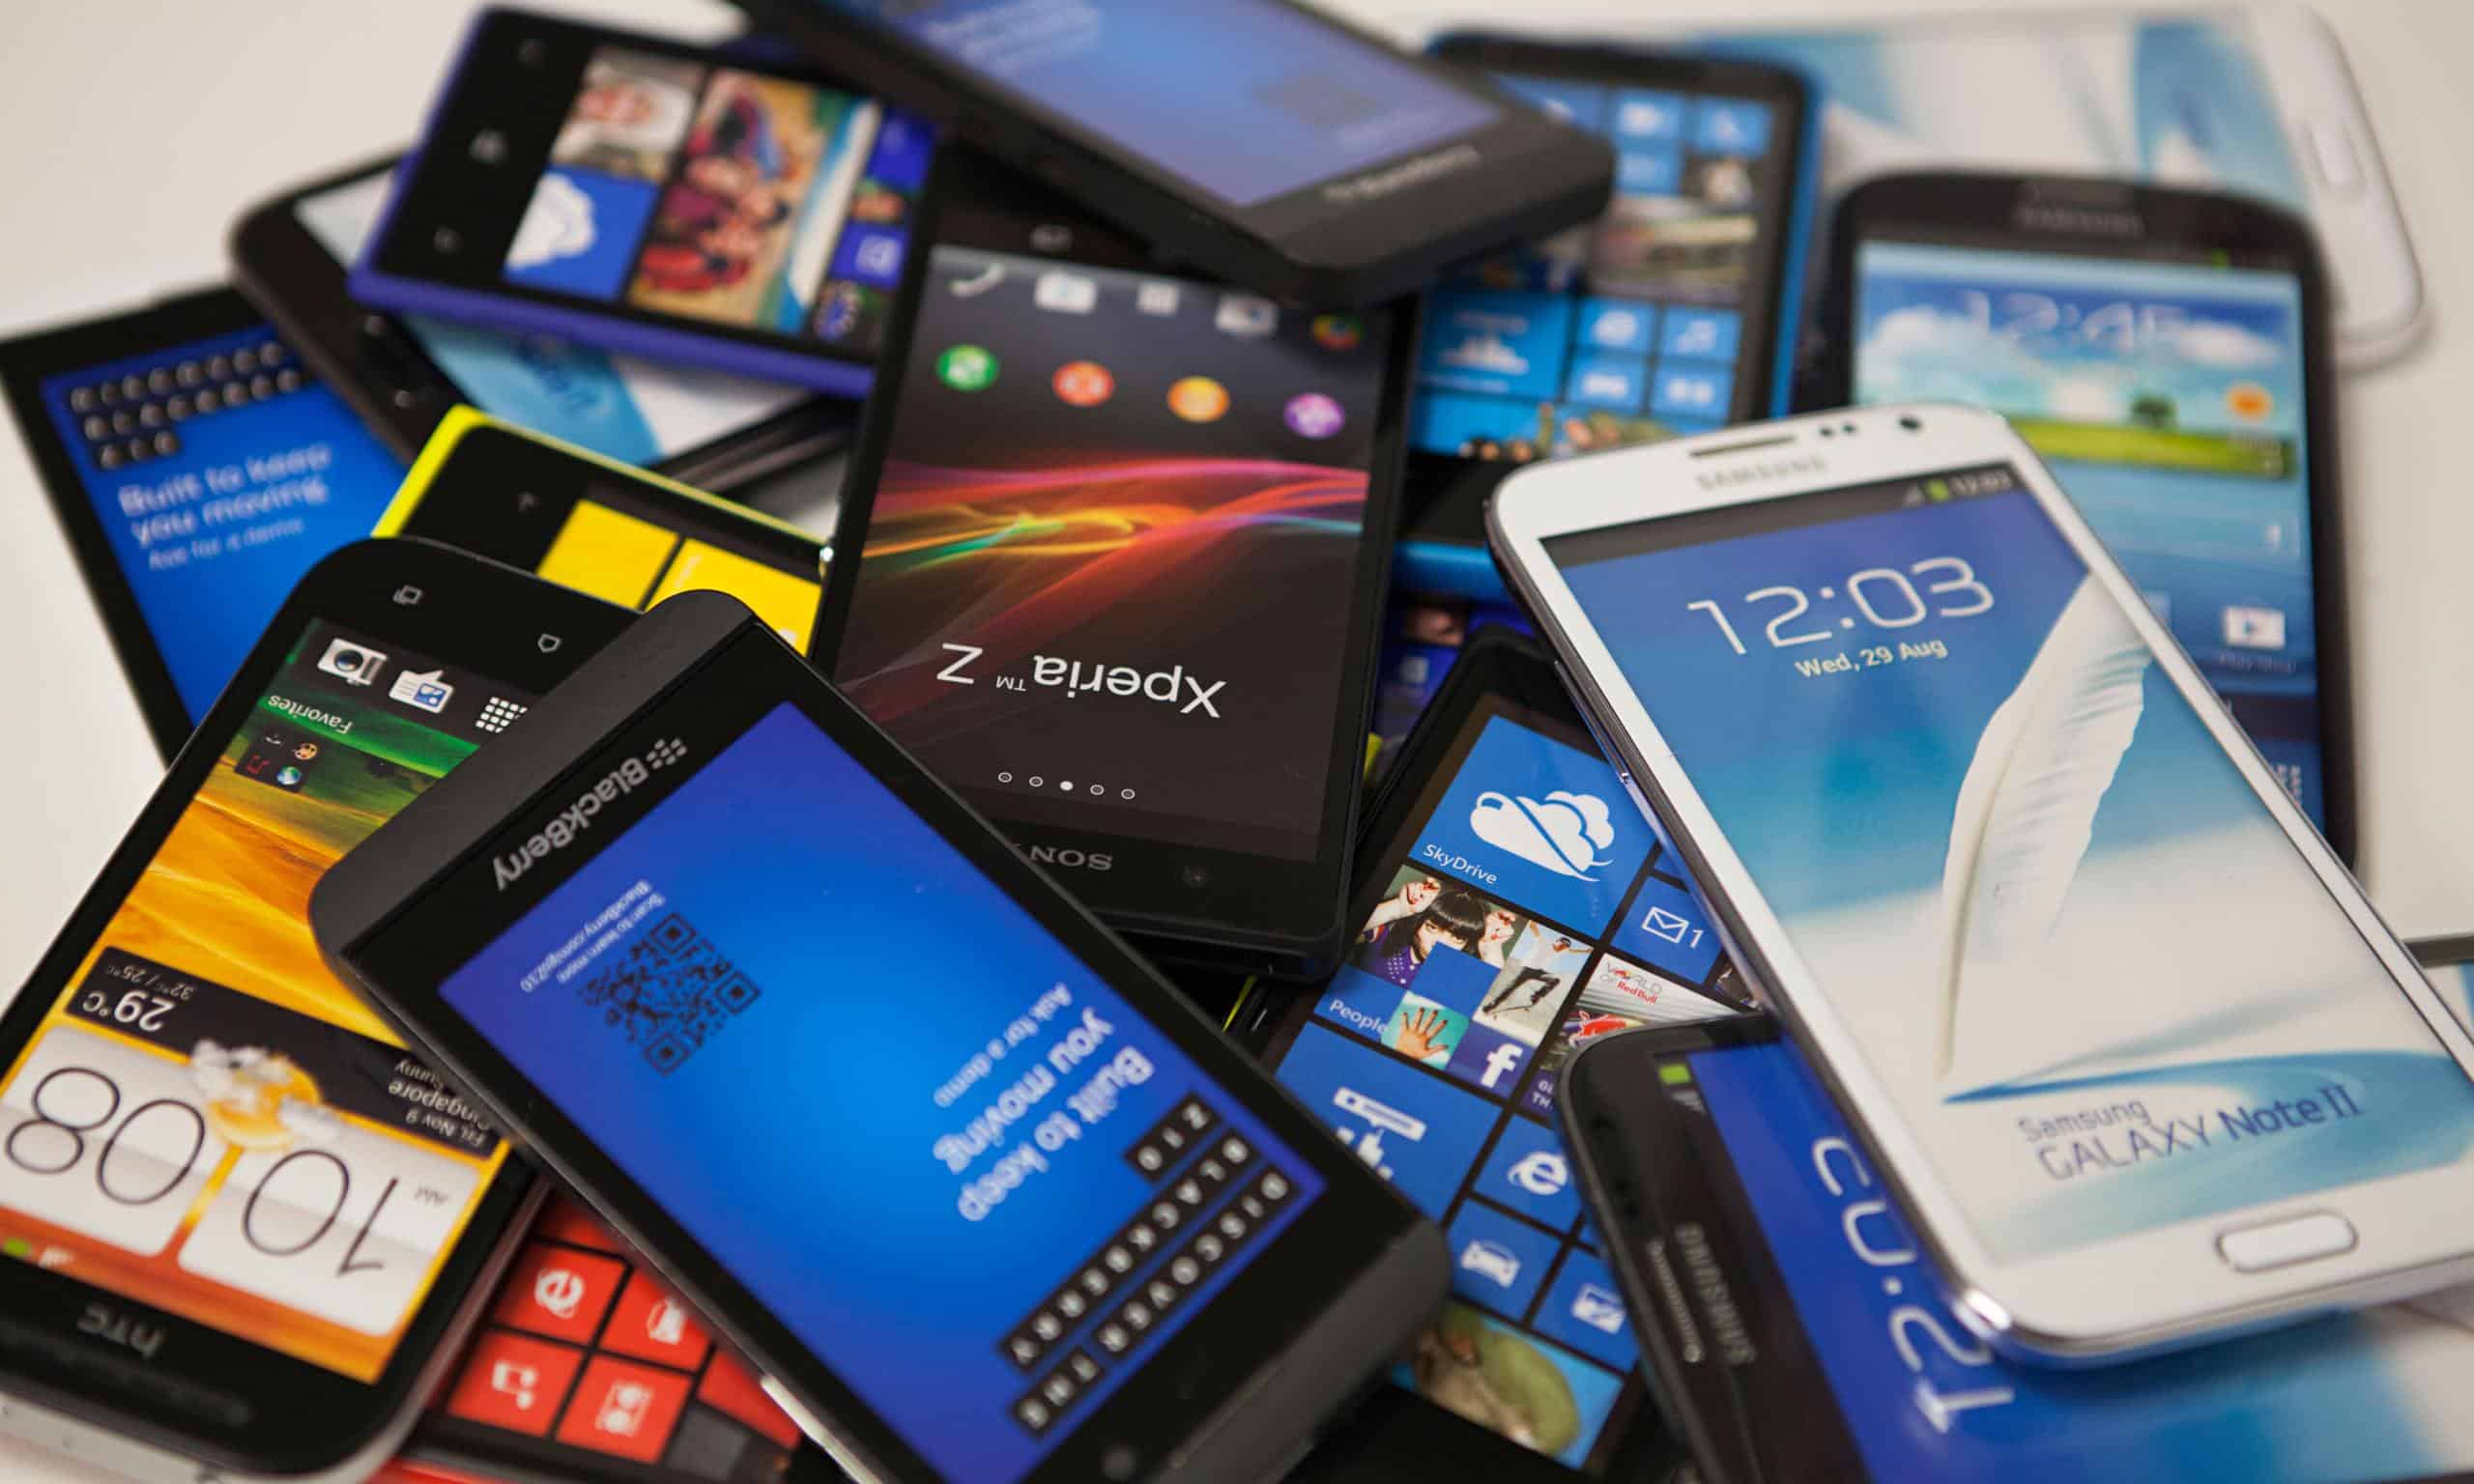 10 Melhores smartphones até 1000 Reais no Brasil - Janeiro 2015 1